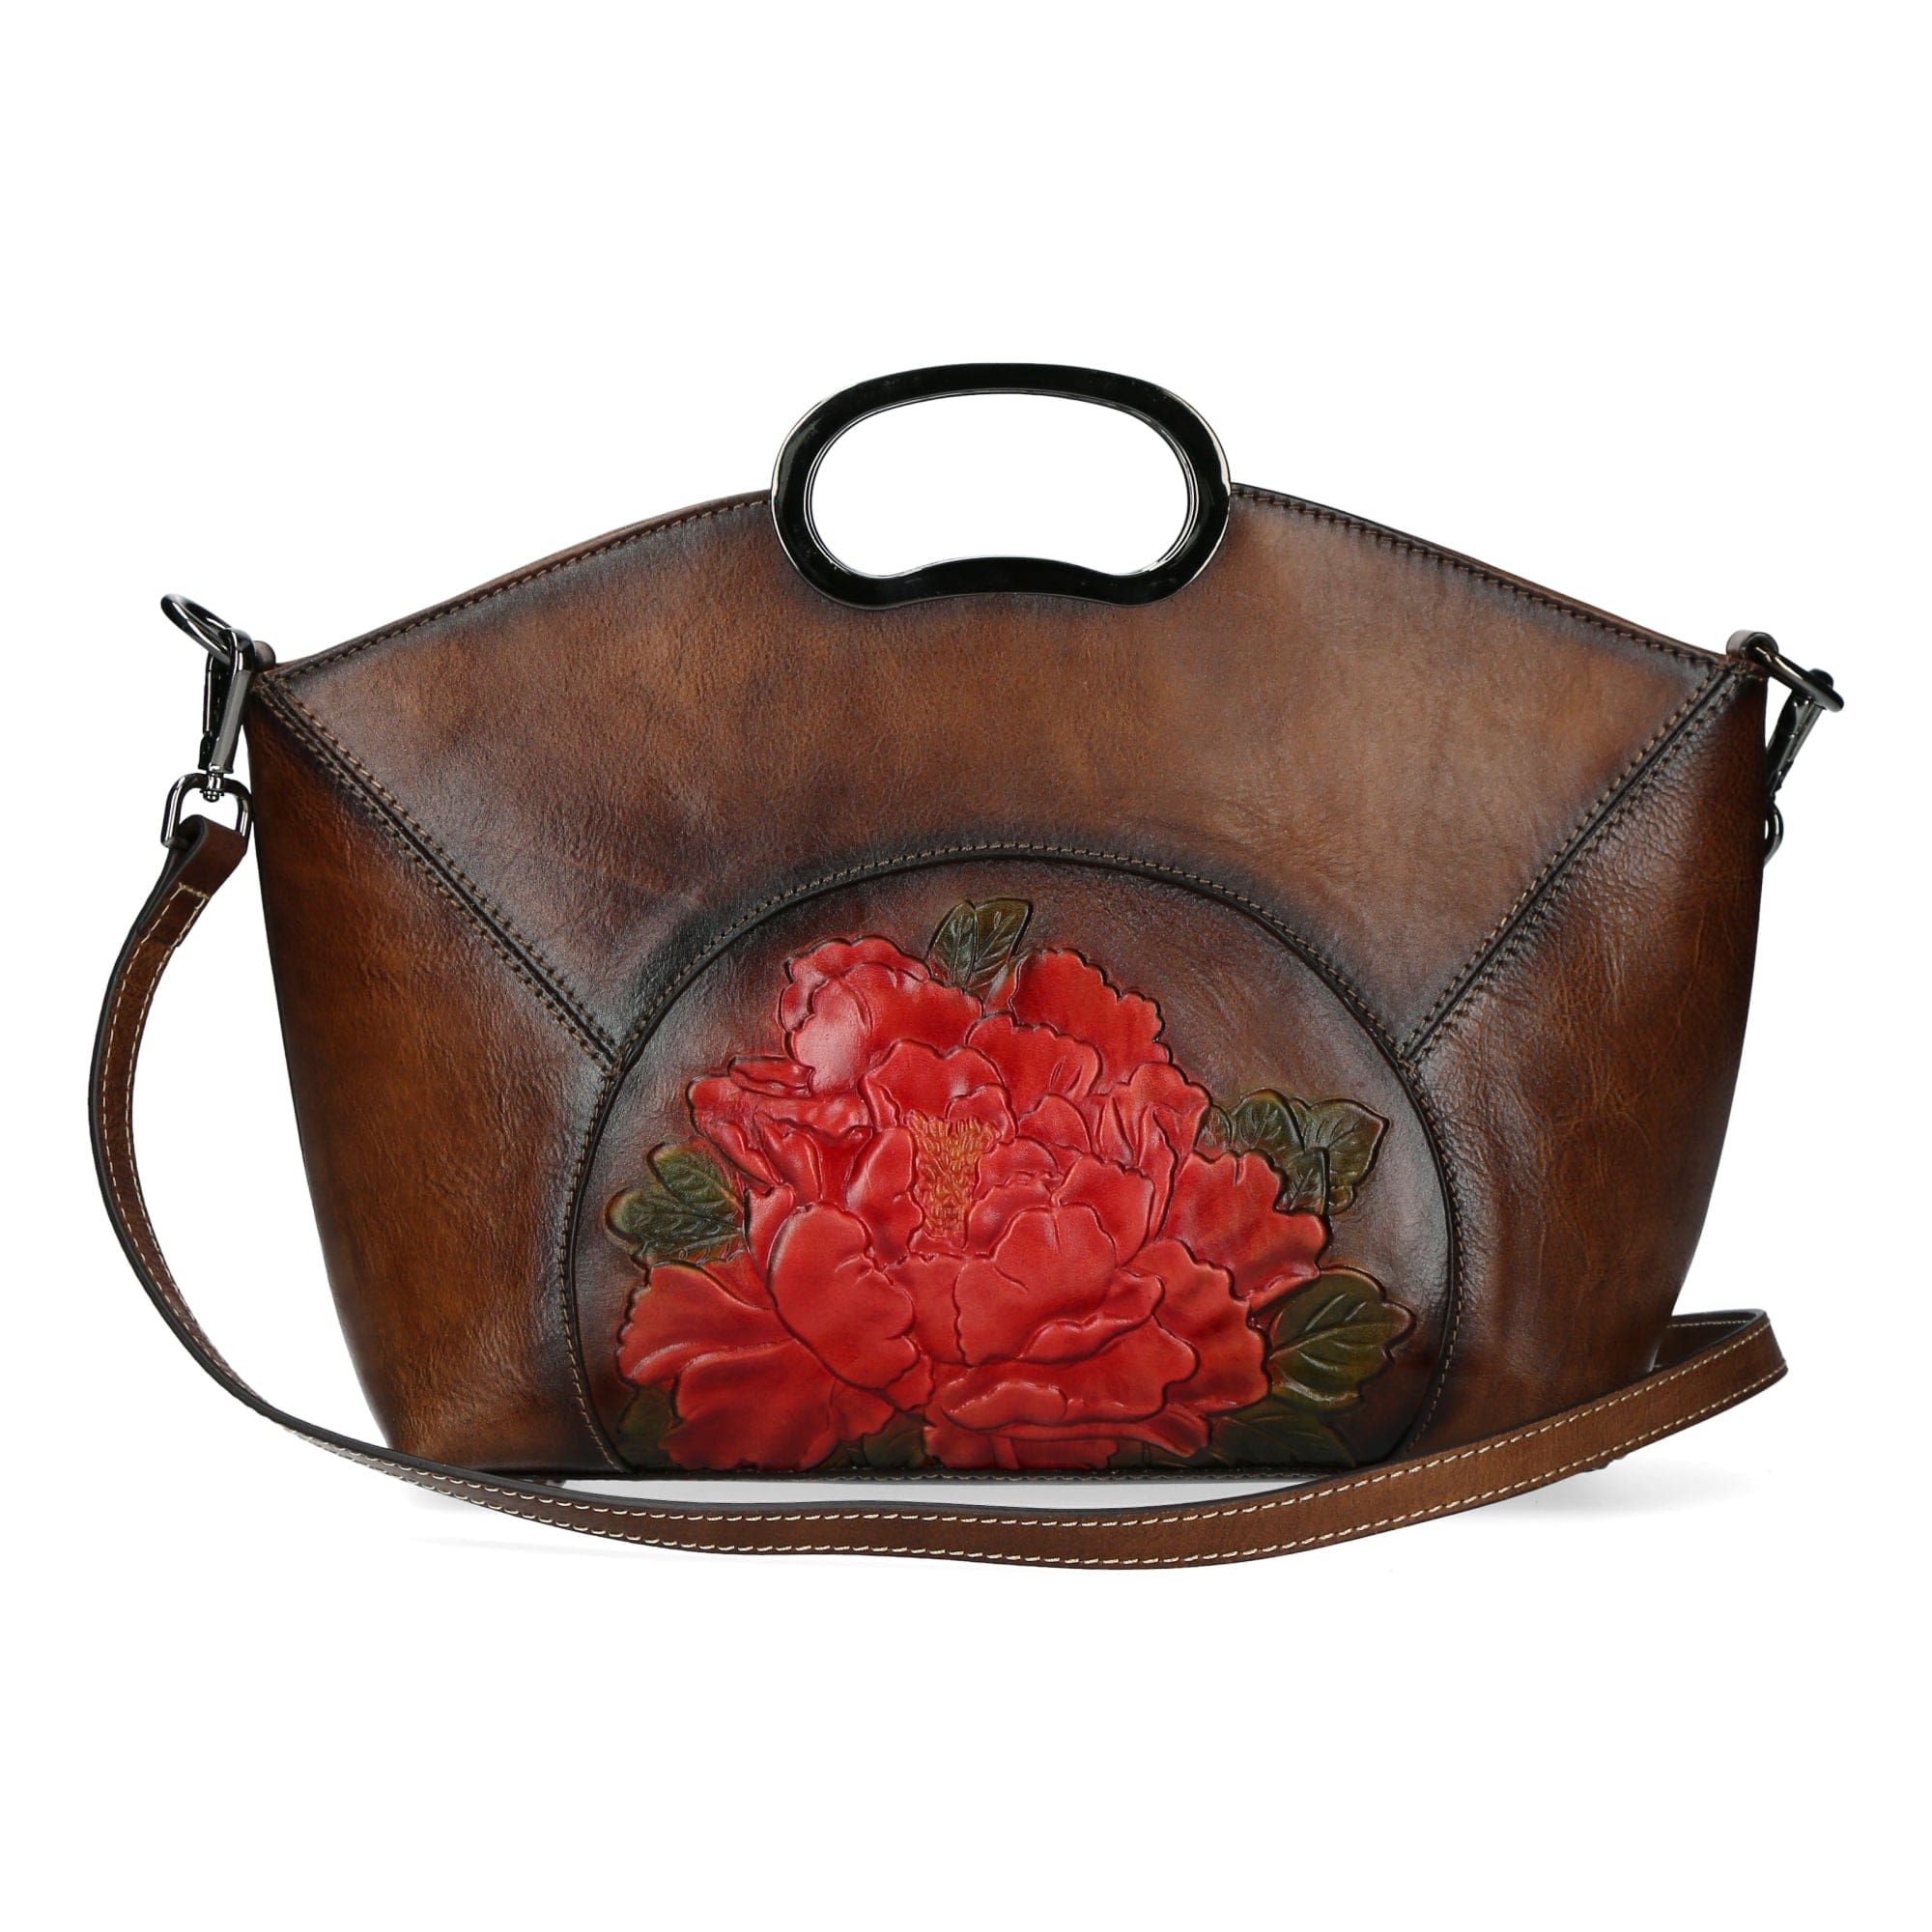 Erytheia Leather Bag - Brown - Bag